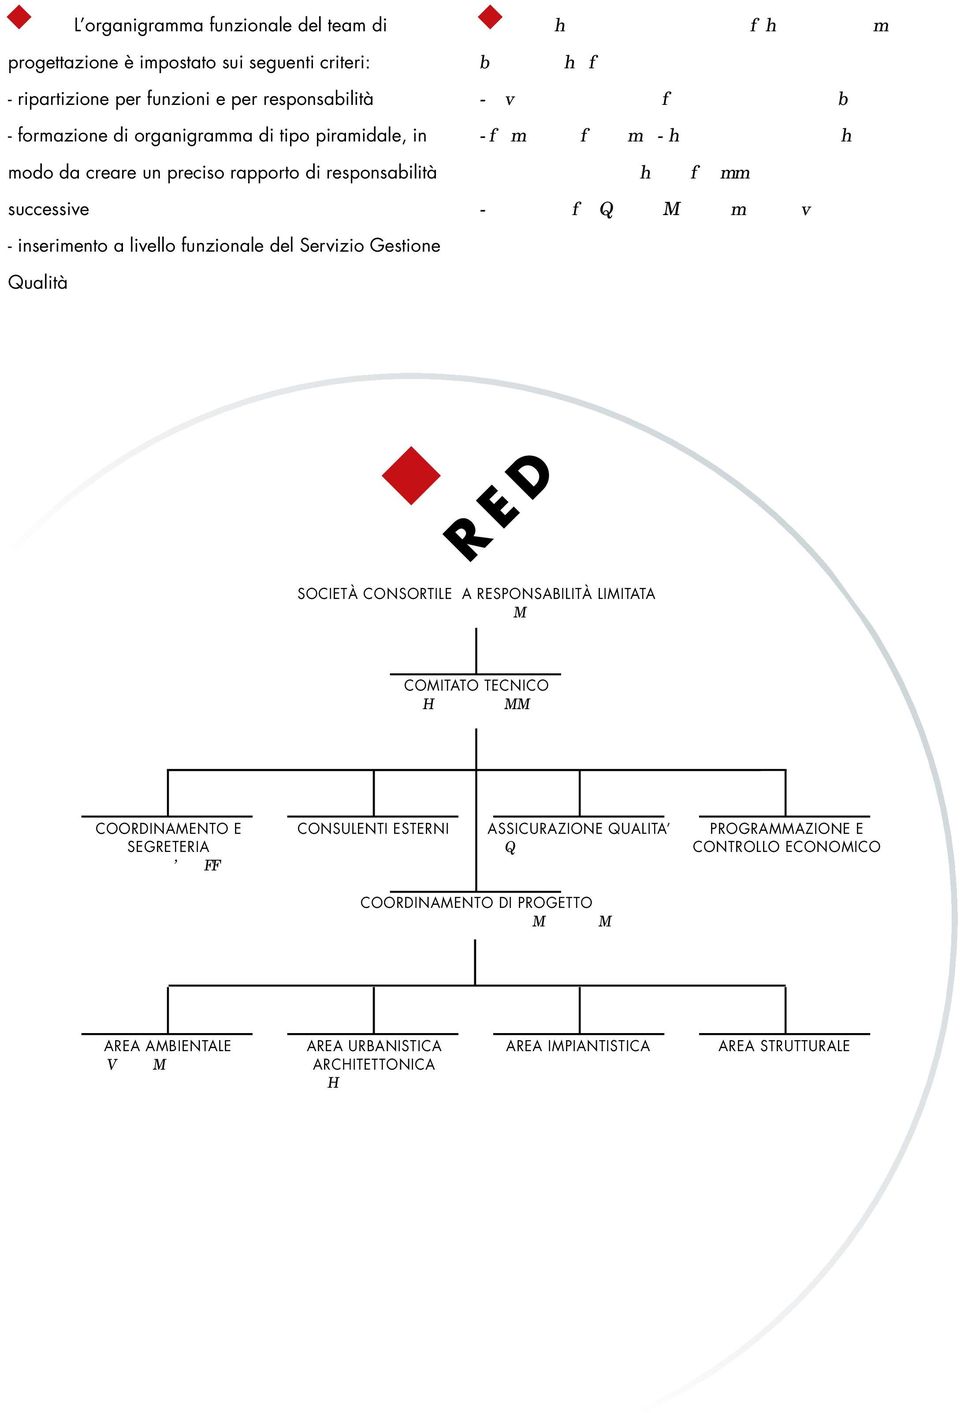 of pyramid-shaped organization charts, ensuring a precise chain of command - insertion of a Quality Management Service - inserimento a livello funzionale del Servizio Gestione Qualità RED SOCIETÀ